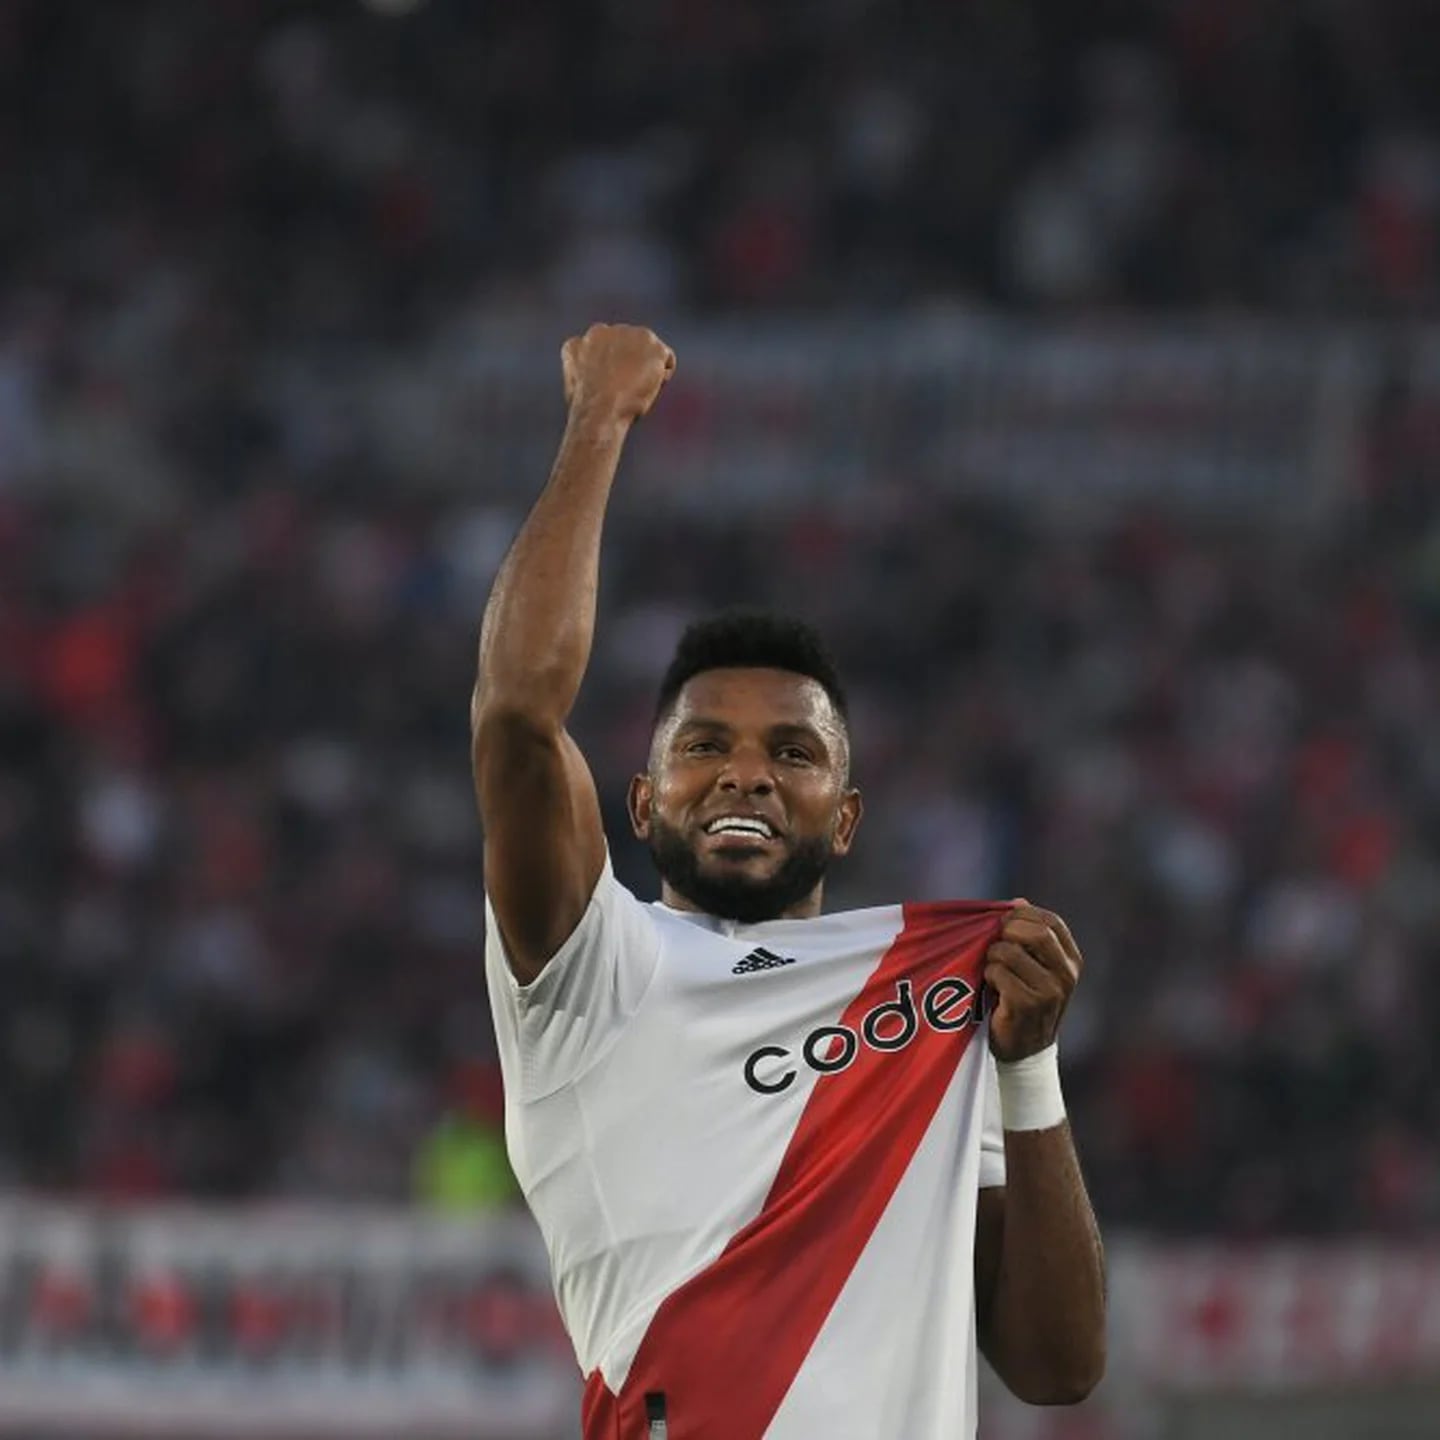 Miguel Borja anota dos golazos con River Plate vs Colón, video - Fútbol  Internacional - Deportes 